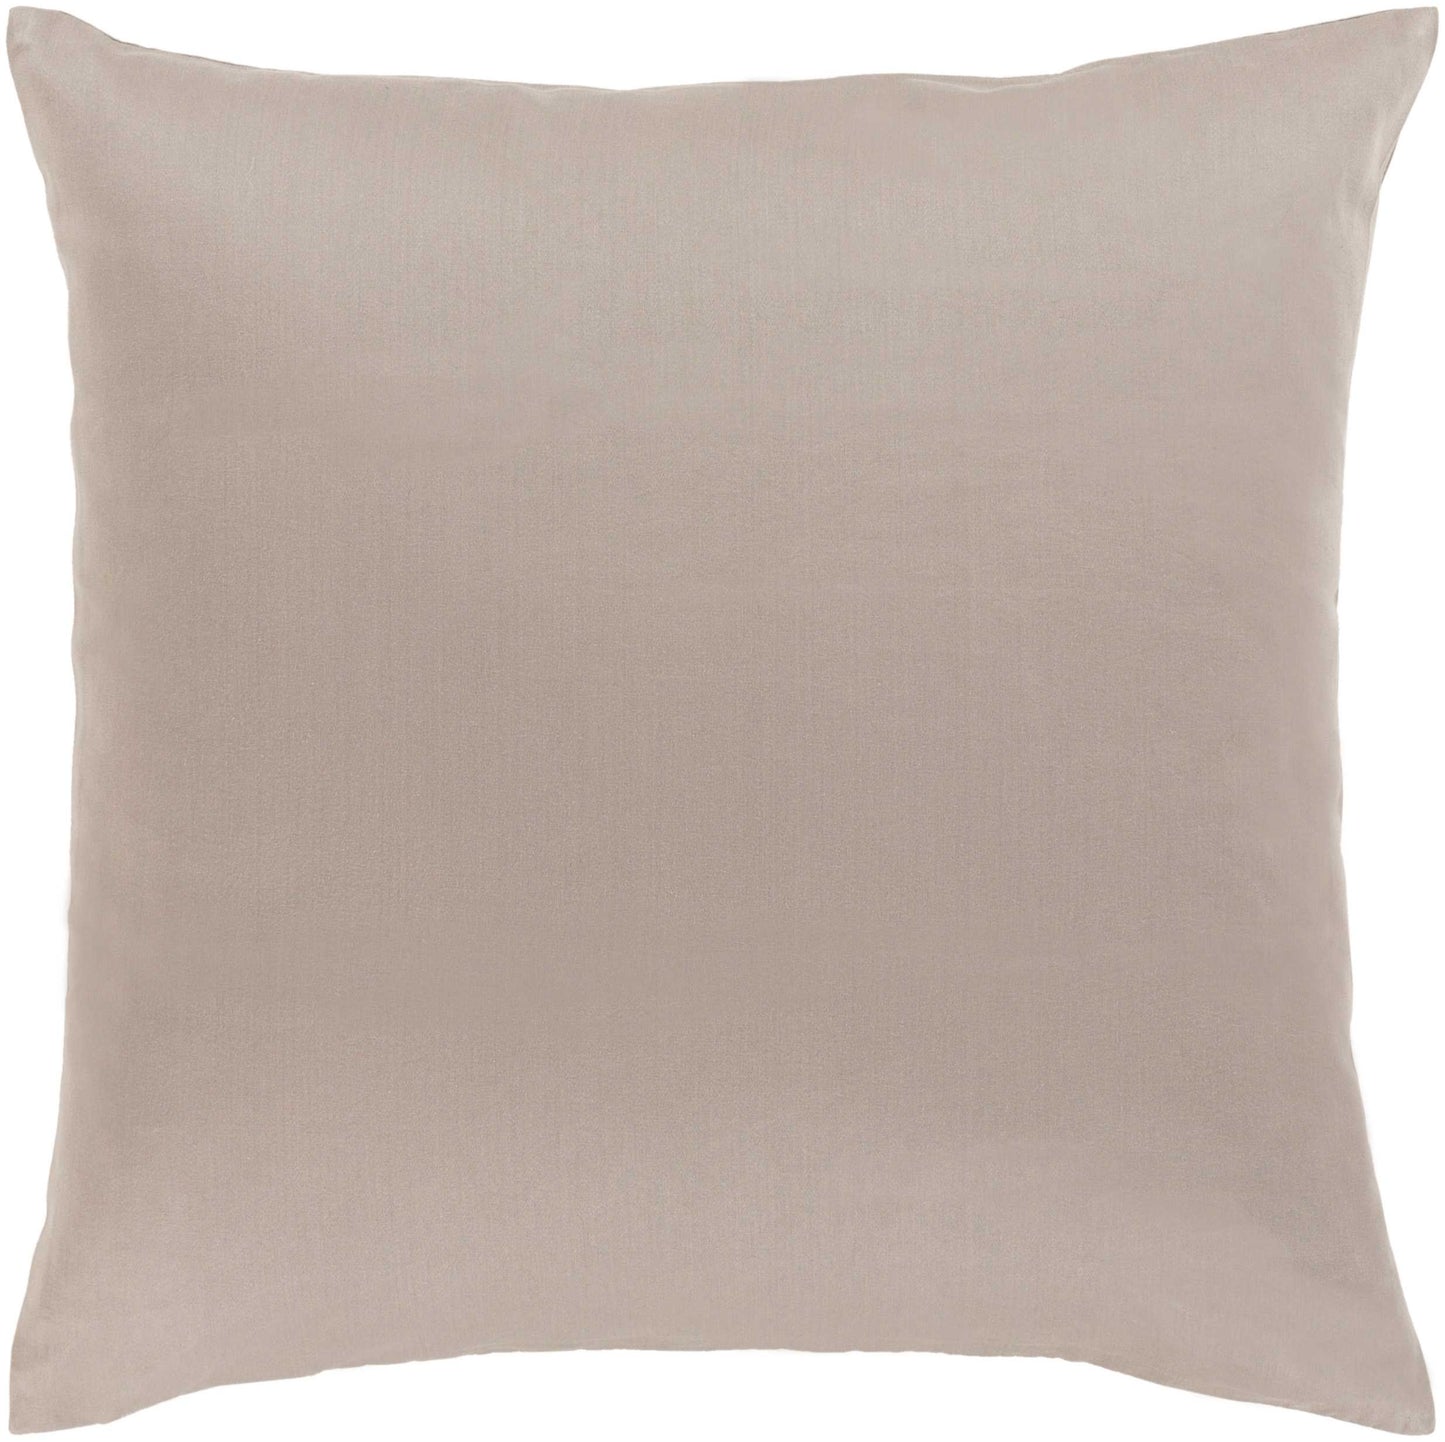 Olne Light Gray Pillow Cover